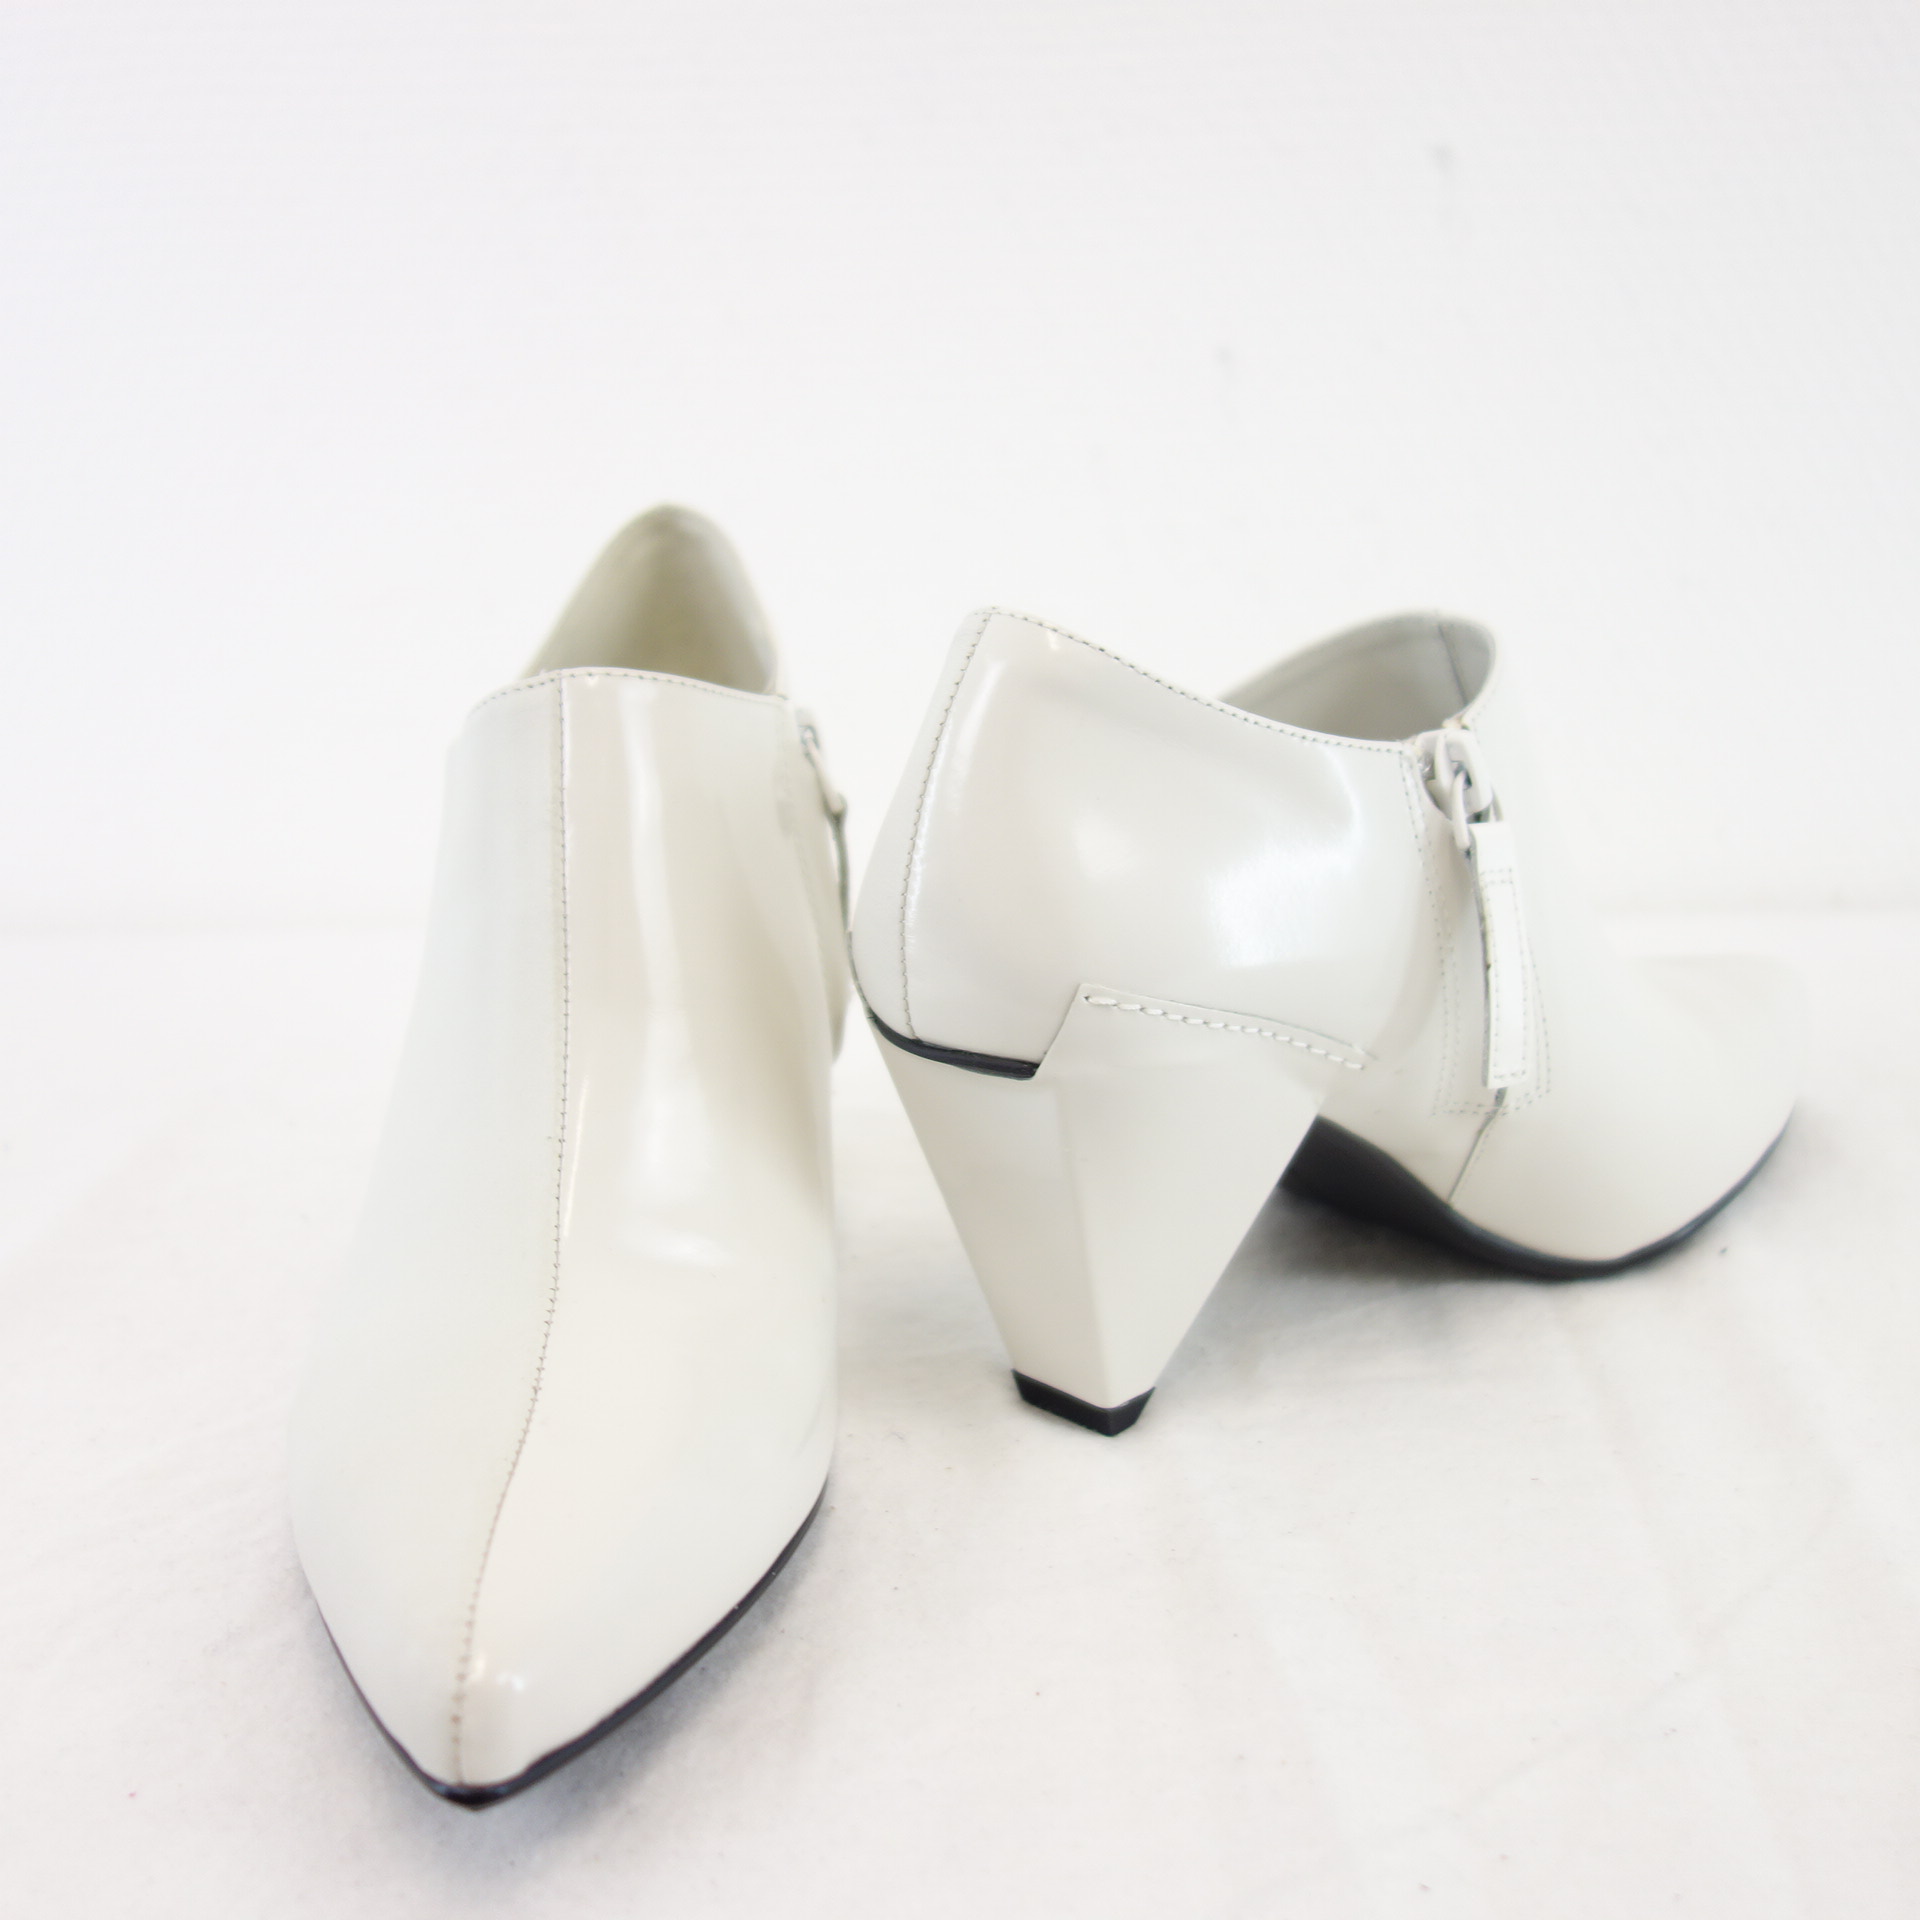 UN UNITED NUDE Damen Schuhe Ankle Boots Stiefeletten Leder Matt Glanz Weiß 